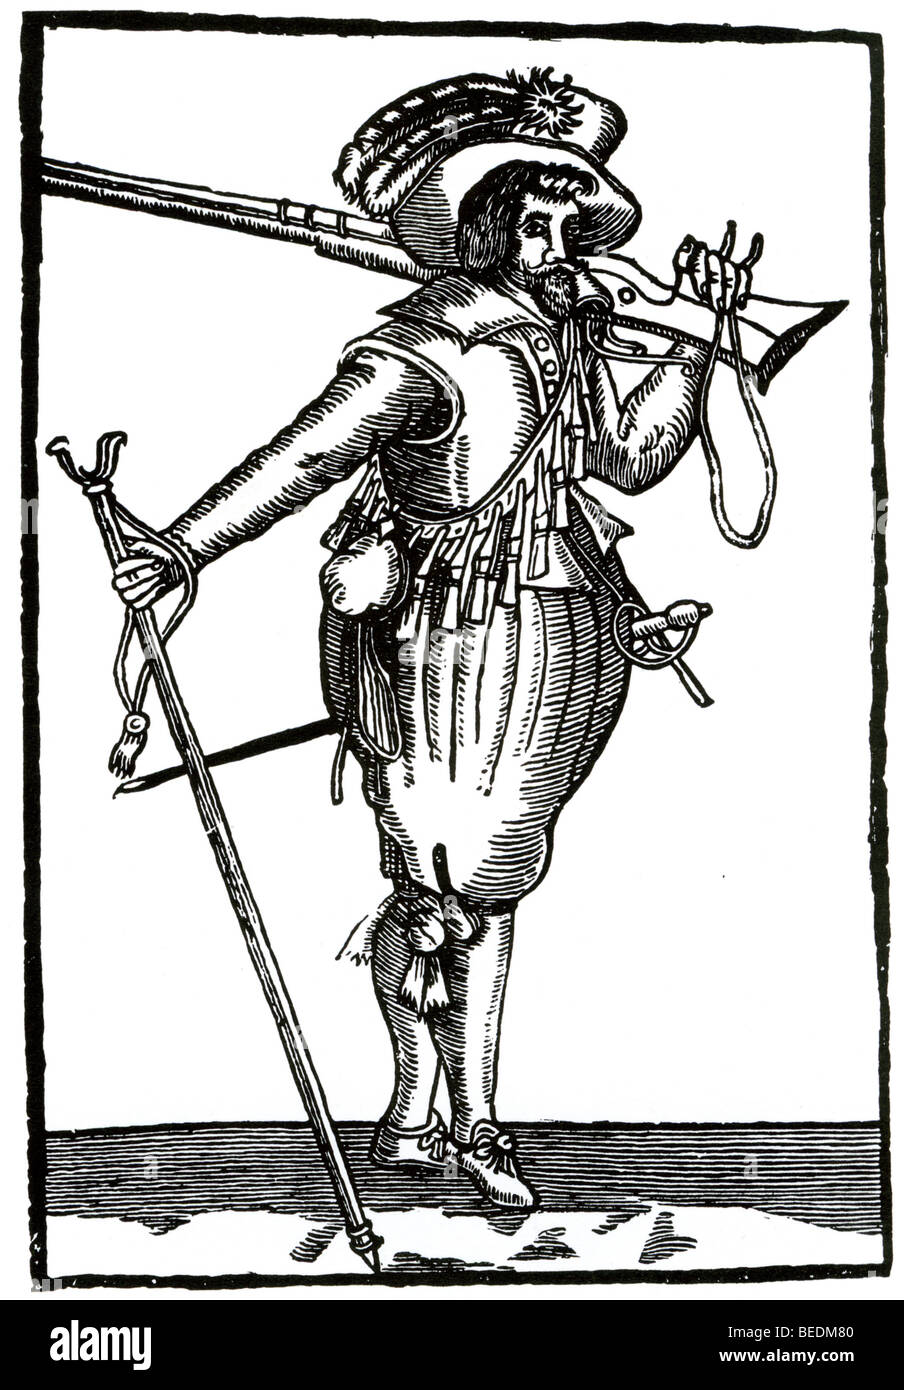 Del XVII secolo MUSKETEER britannica con il treppiede utilizzati per bilanciare la sua arma Foto Stock